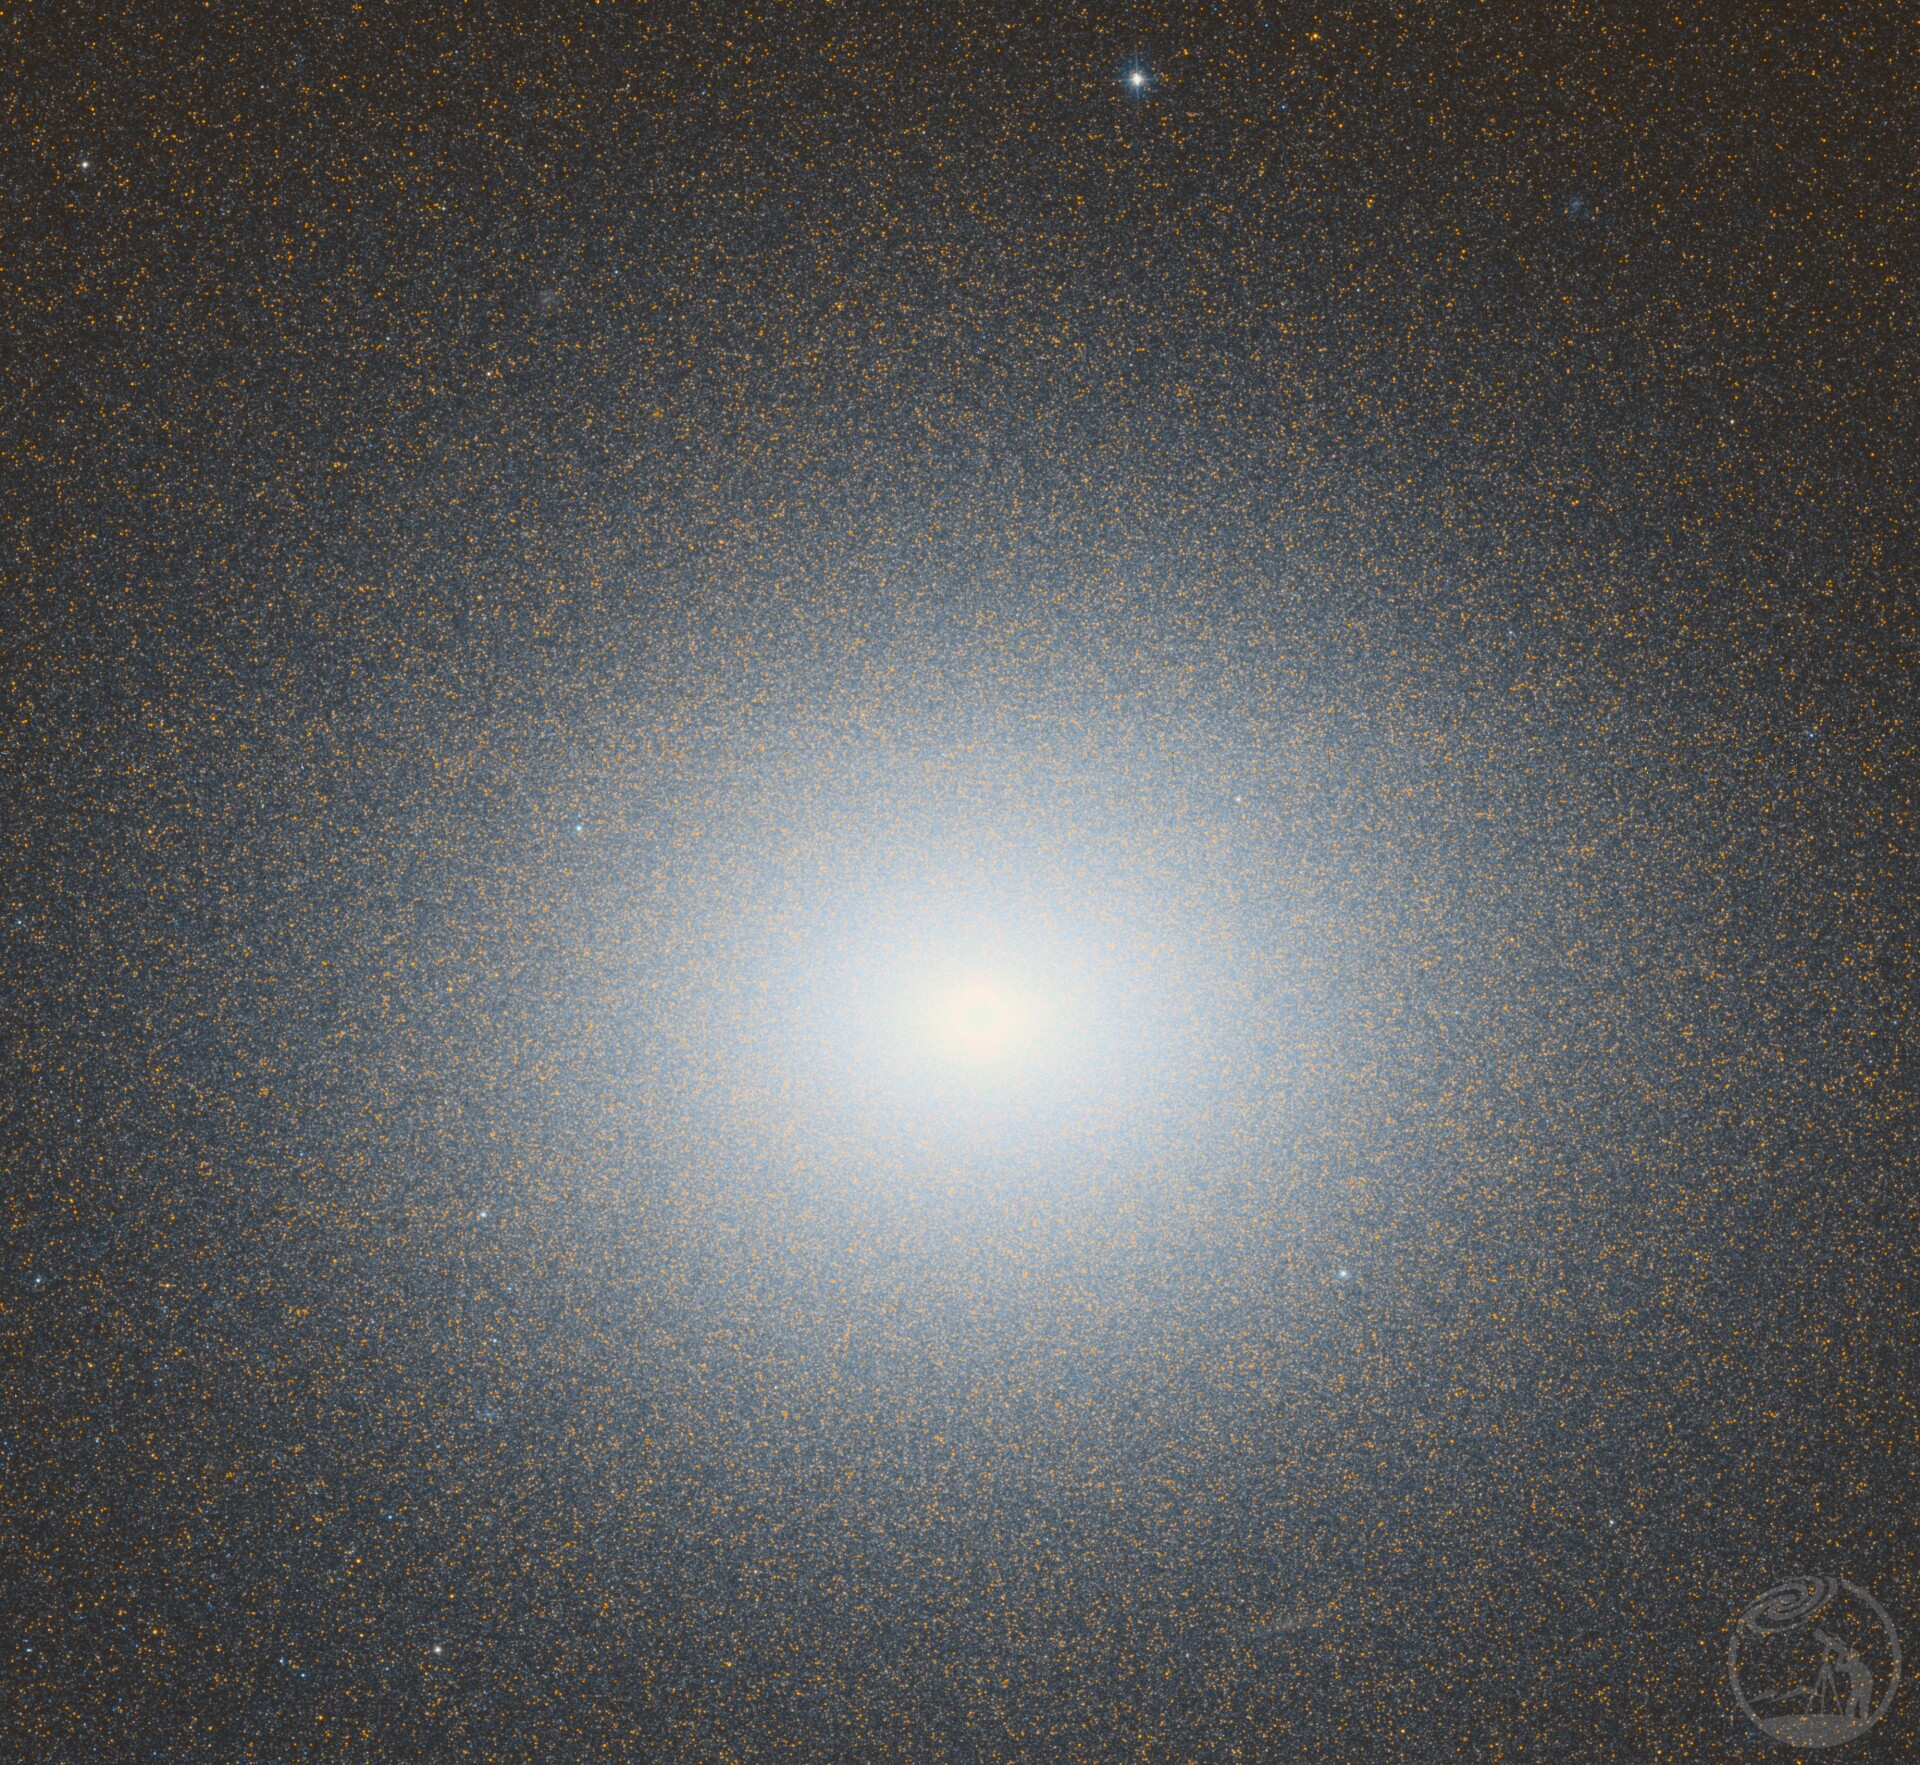 矮椭球星系M32